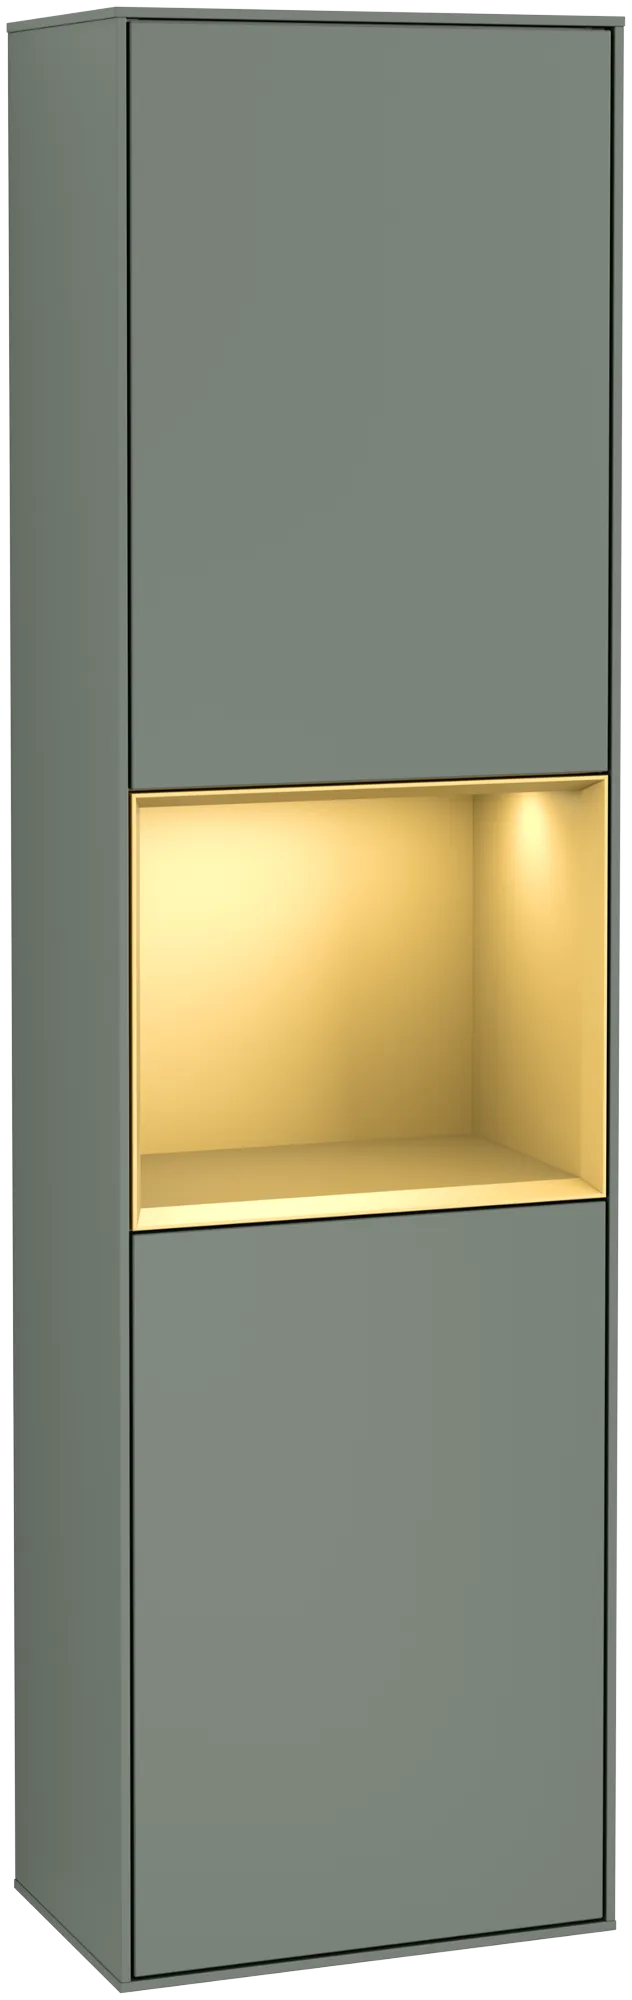 Bild von VILLEROY BOCH Finion Hochschrank, mit Beleuchtung, 2 Türen, 418 x 1516 x 270 mm, Olive Matt Lacquer / Gold Matt Lacquer #G470HFGM